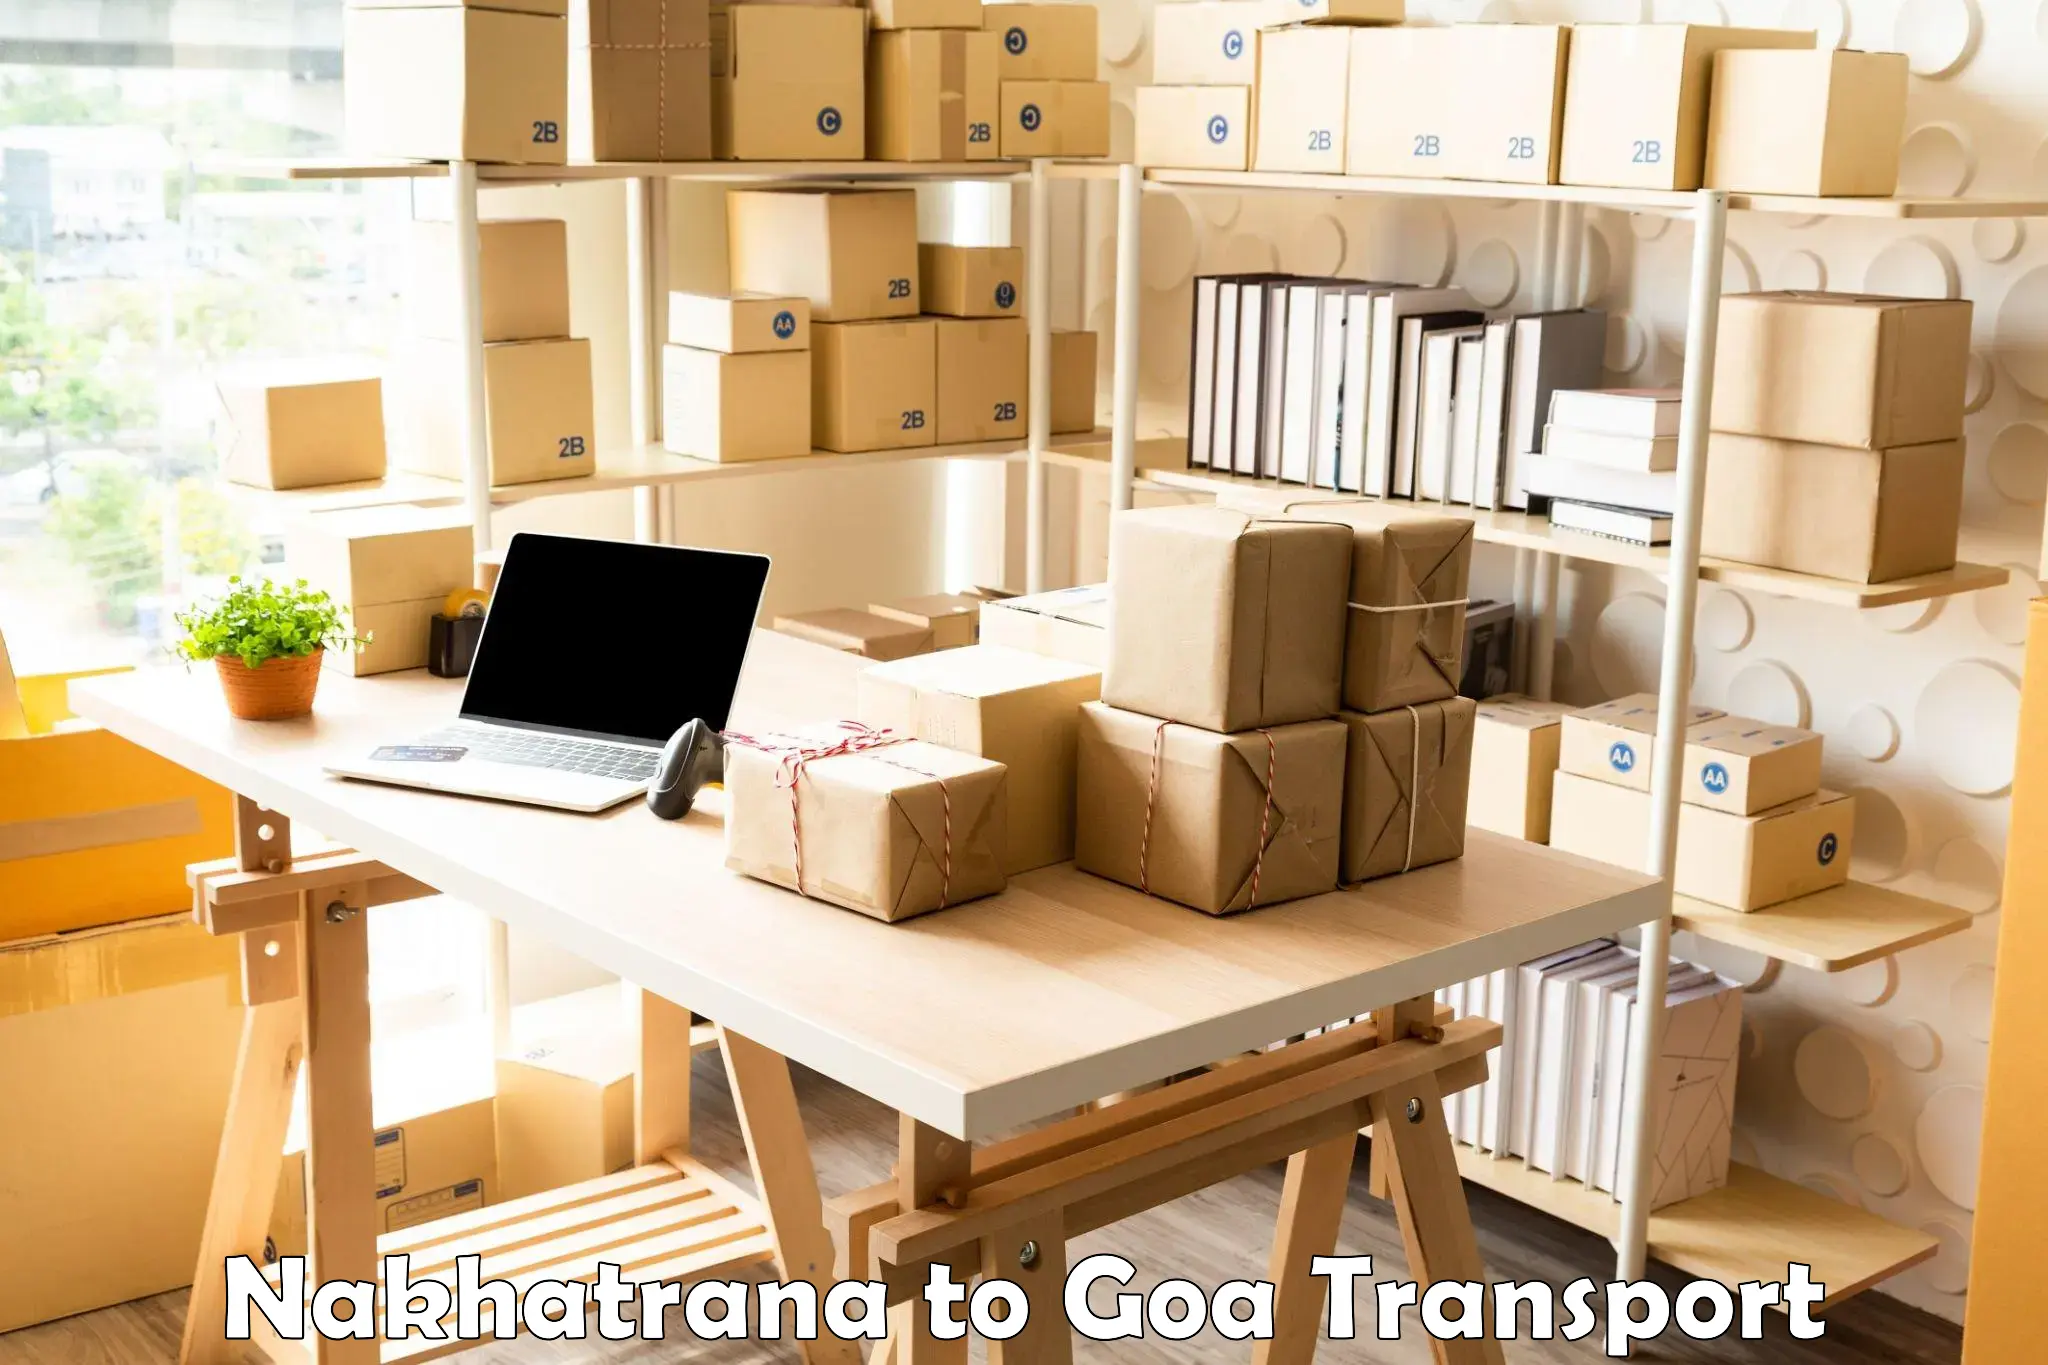 Container transport service Nakhatrana to Goa